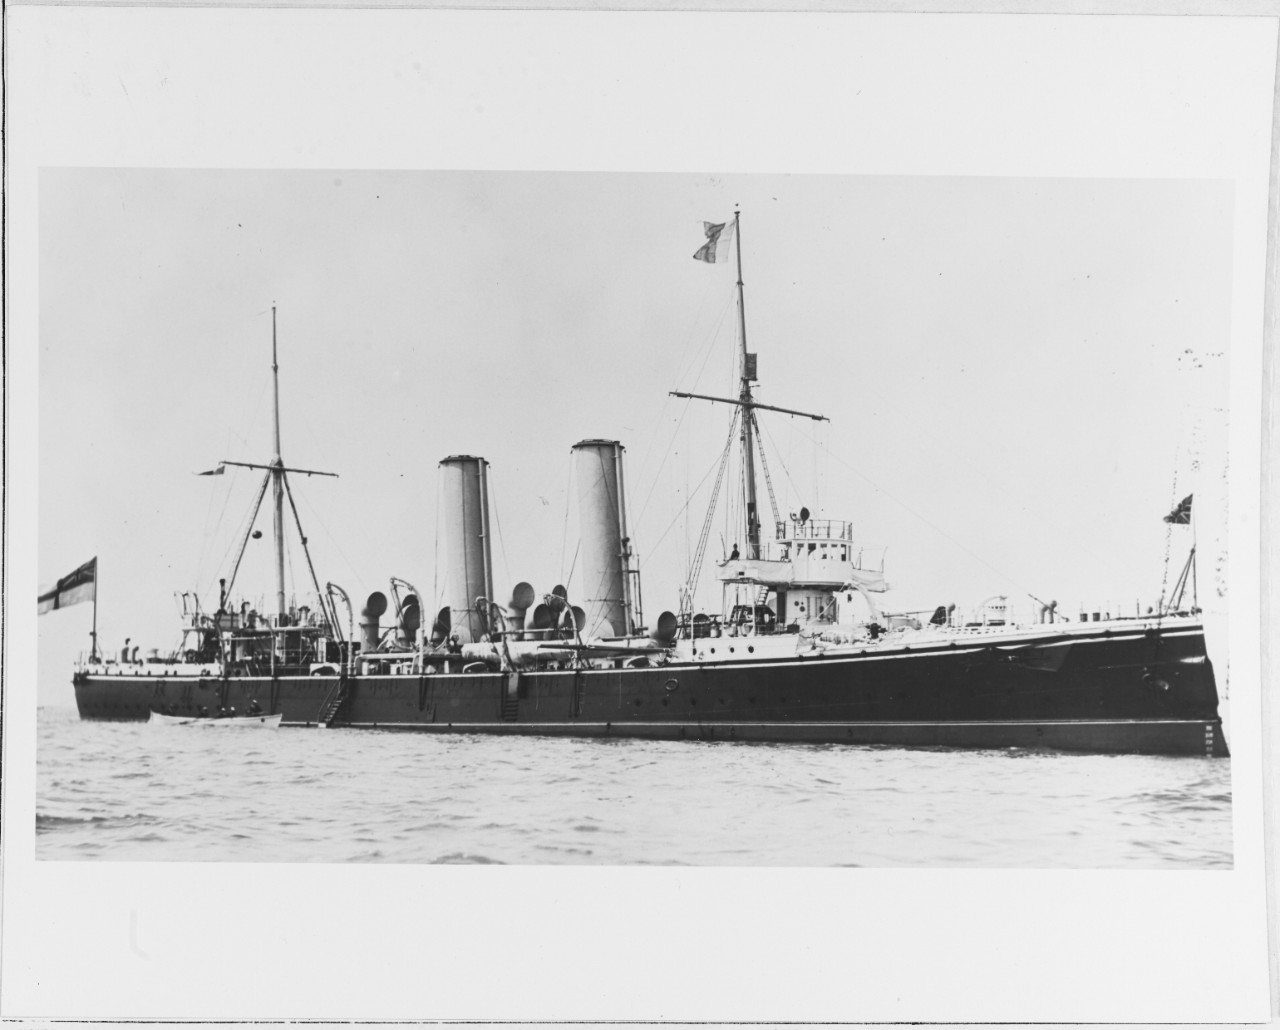 HMS AEOLUS (British cruiser, 1891)